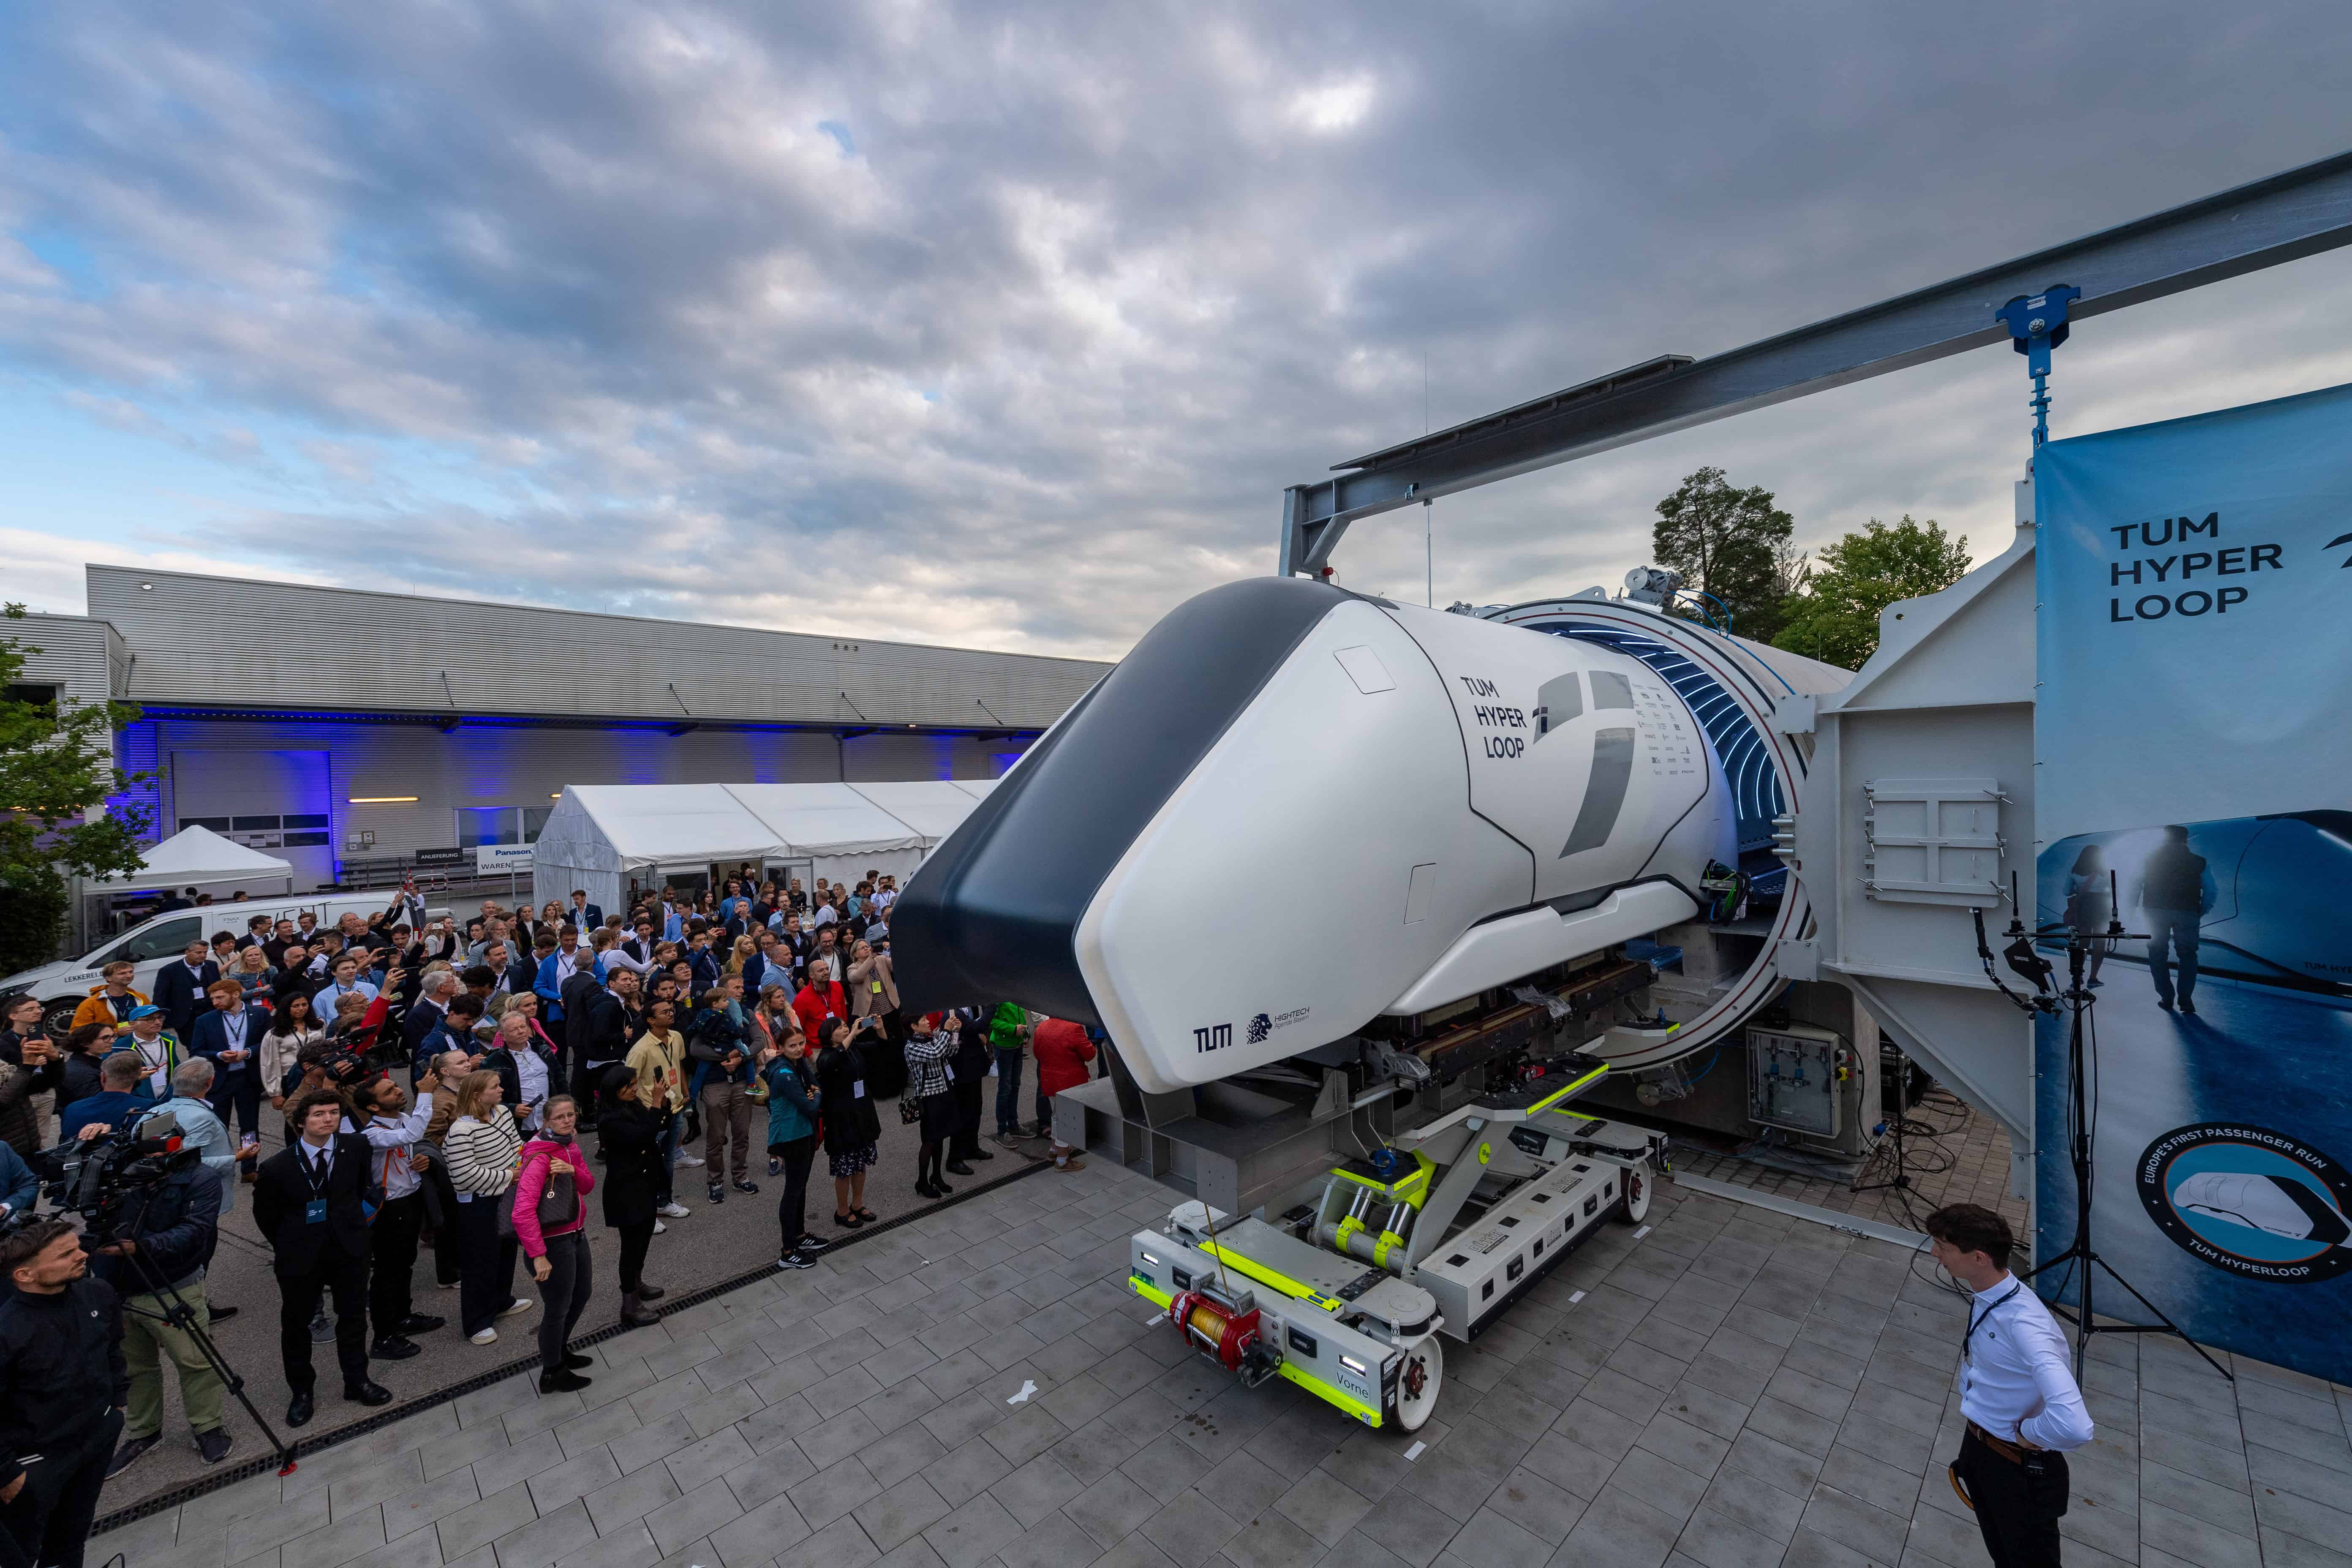 Hyperloop-Geschichte im Entstehen: Europas erste Teststrecke im Maßstab 1:1 geht in München in Betrieb